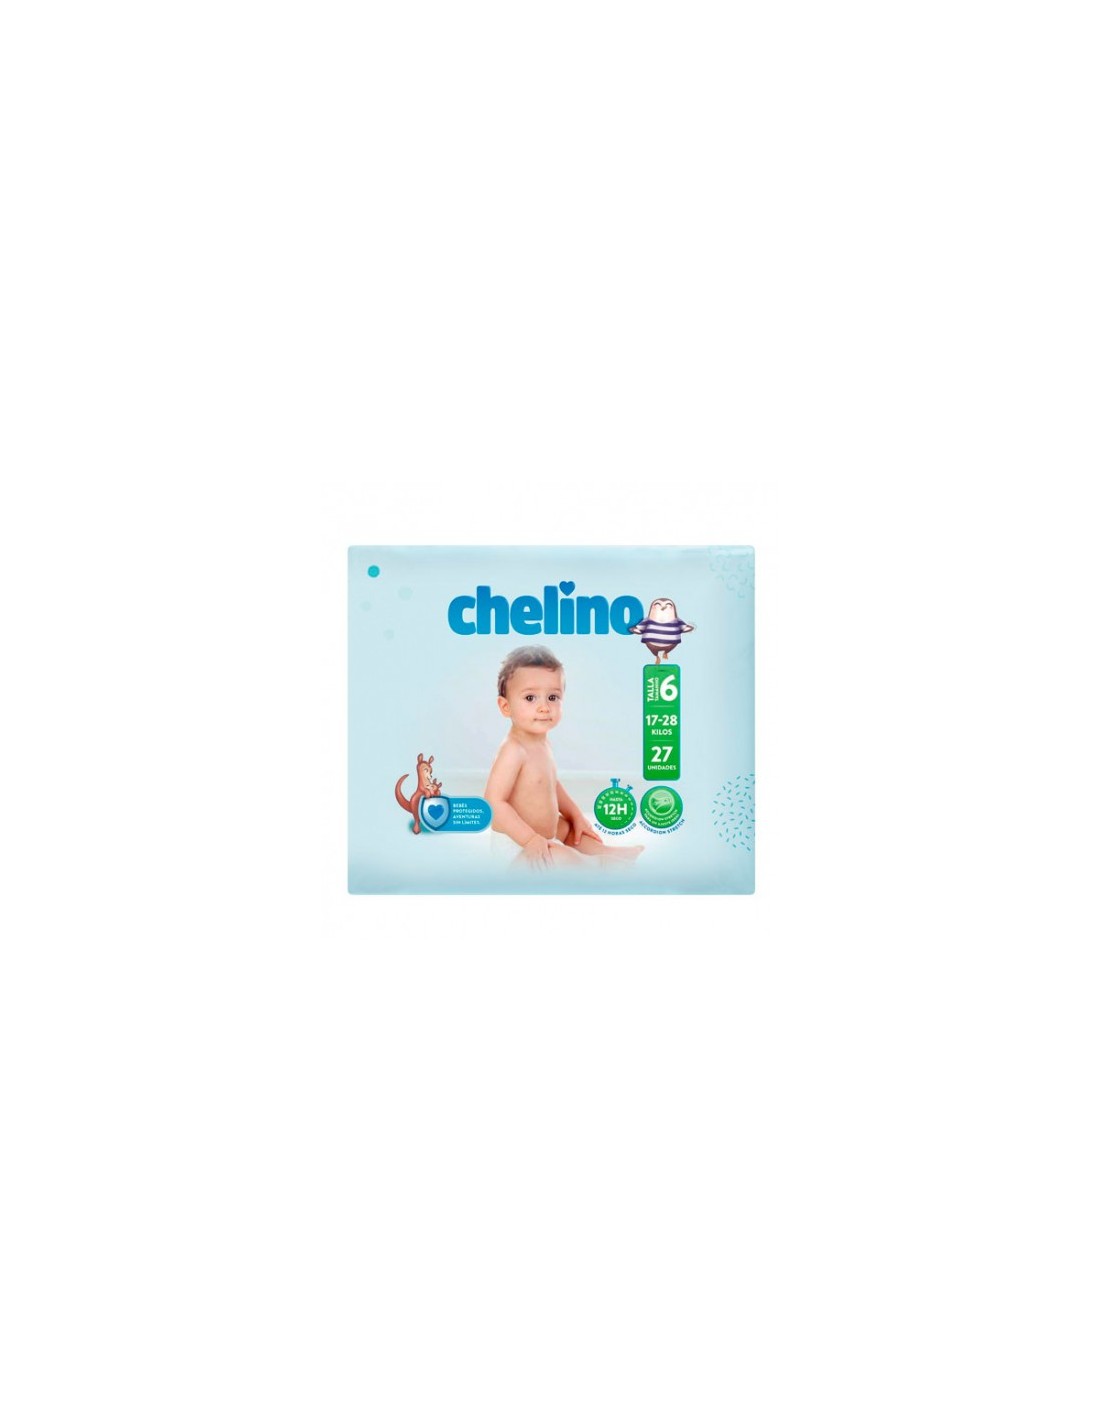 Chelino Pañal infantil Talla 3 (4-10kg), 36 Unidades (Paquete de 3)